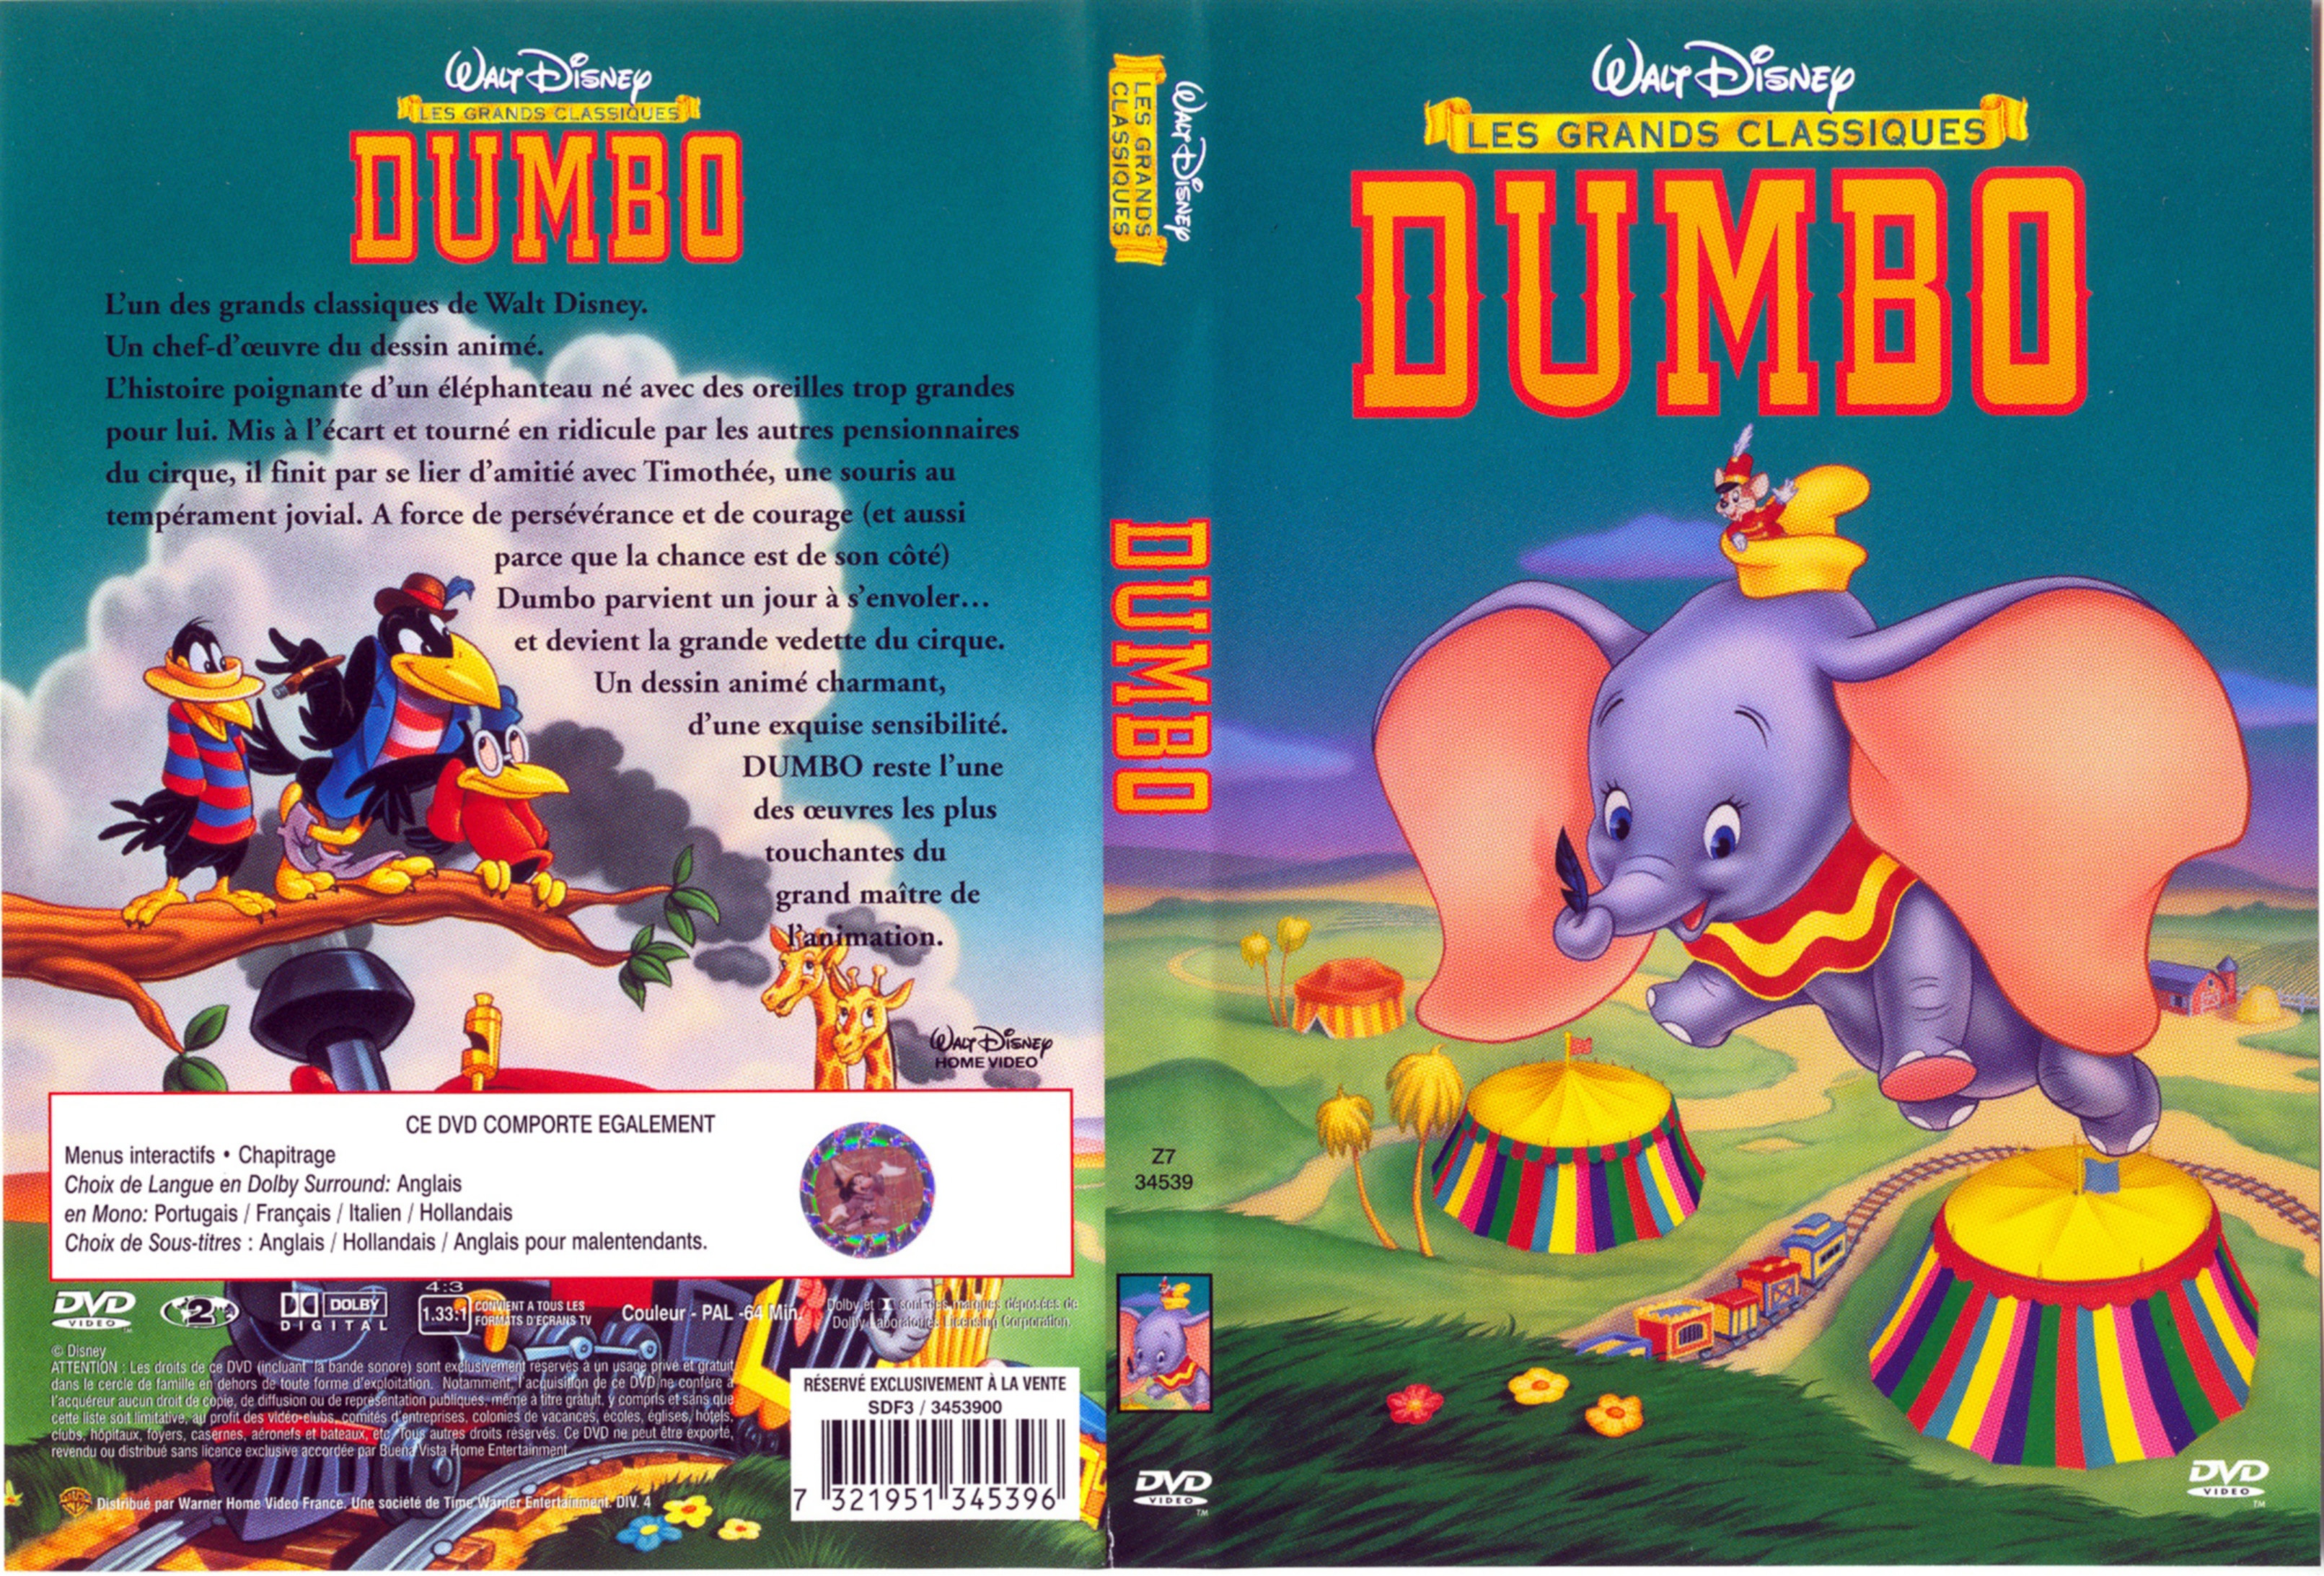 Jaquette DVD Dumbo v2